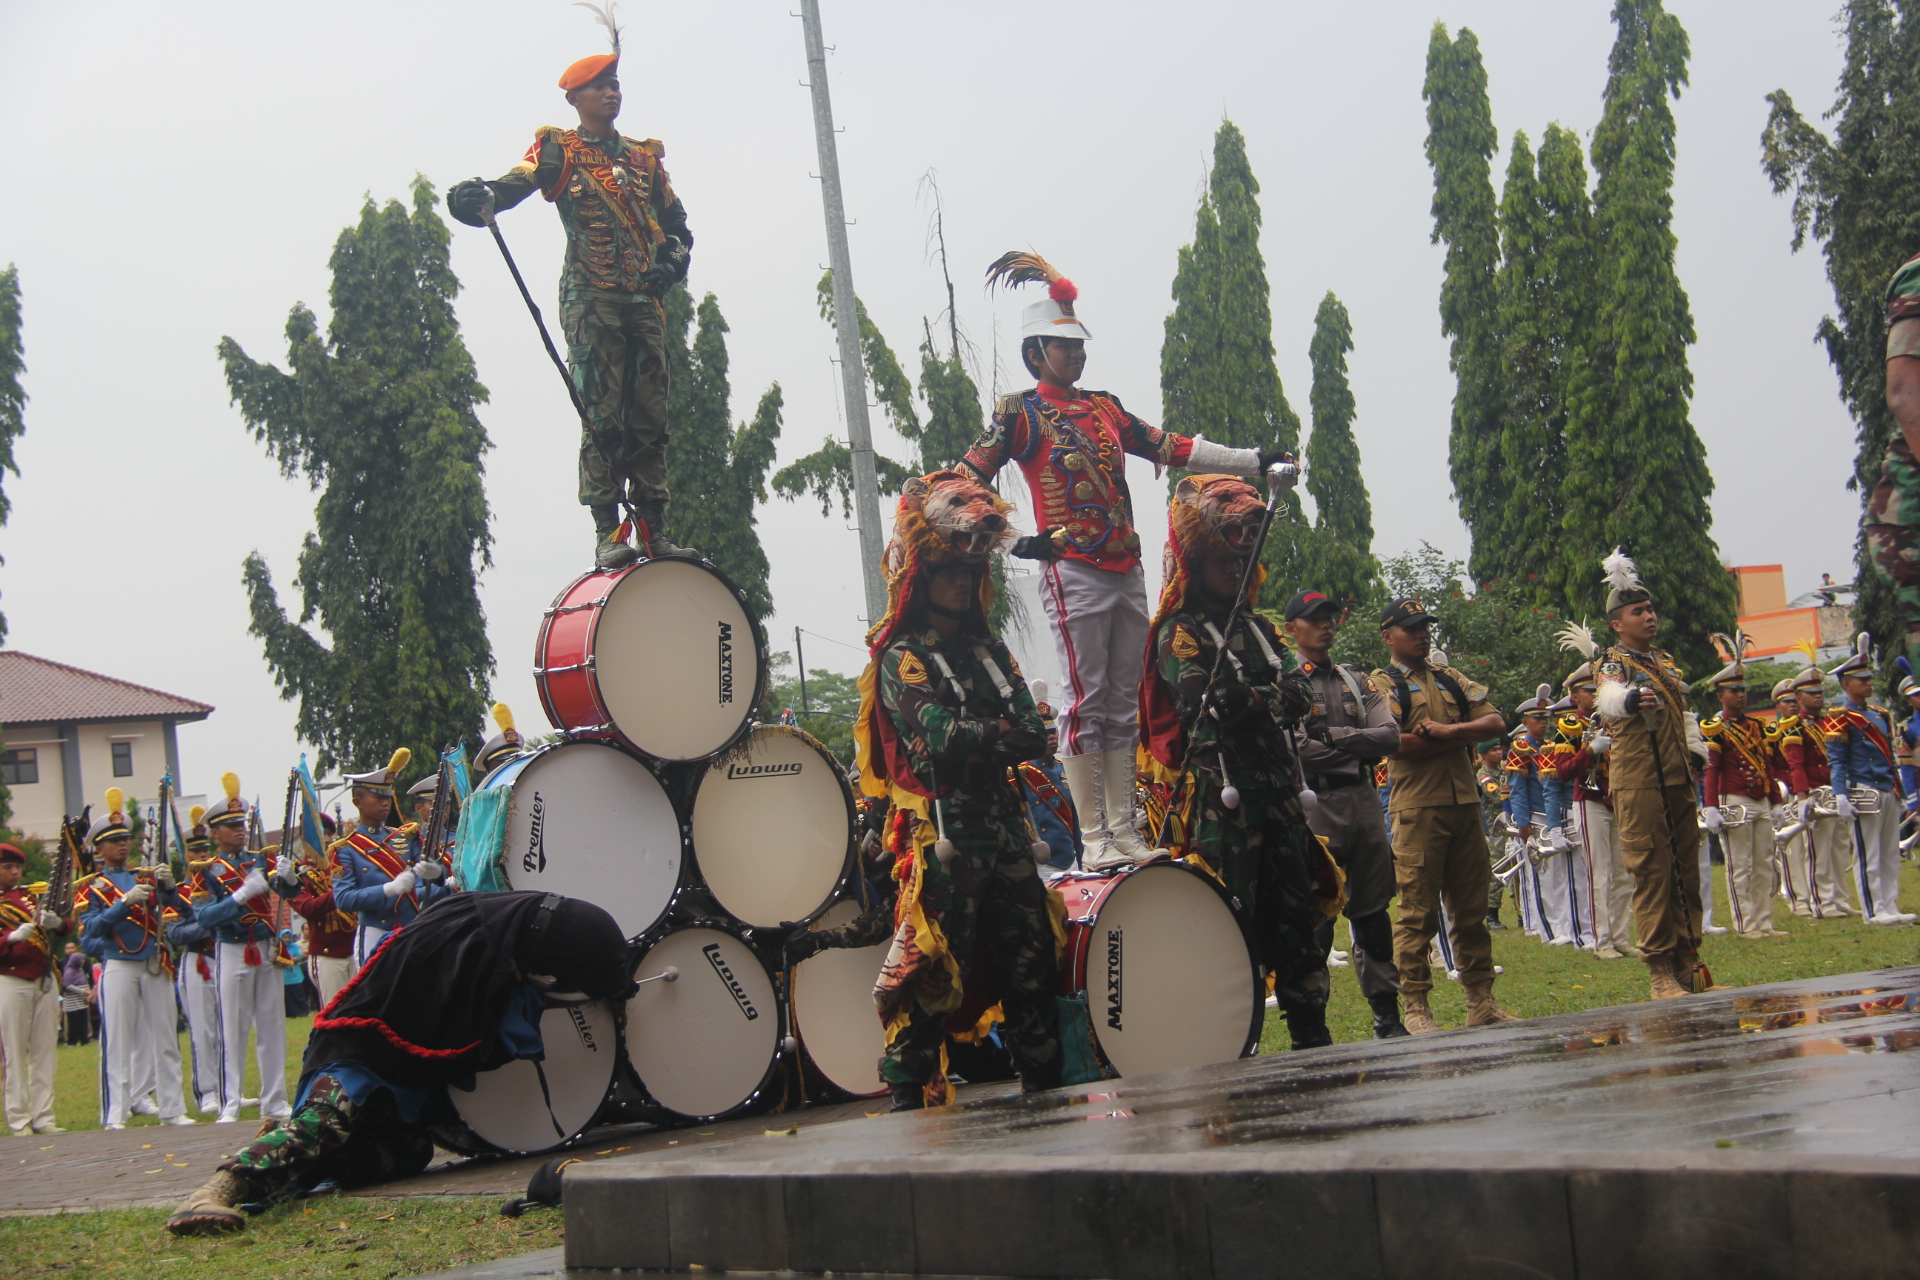 Drum Band Latsitarda Nusantara ke 35 Semarakan Alun-alun